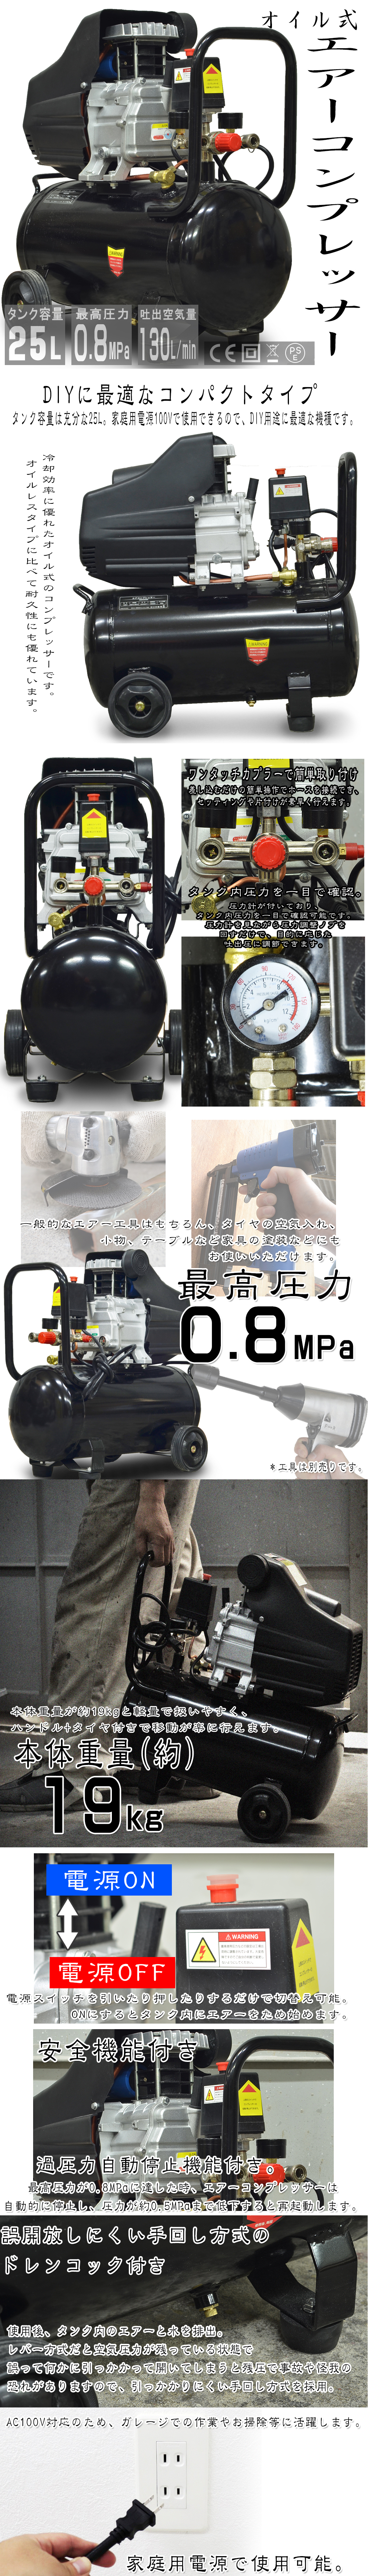 日本未入荷 過圧力自動停止機能 オイル式 100V エアーコンプレッサー エアーツール 車 小型 0.8Mpa 25L 容量 工具 その他 